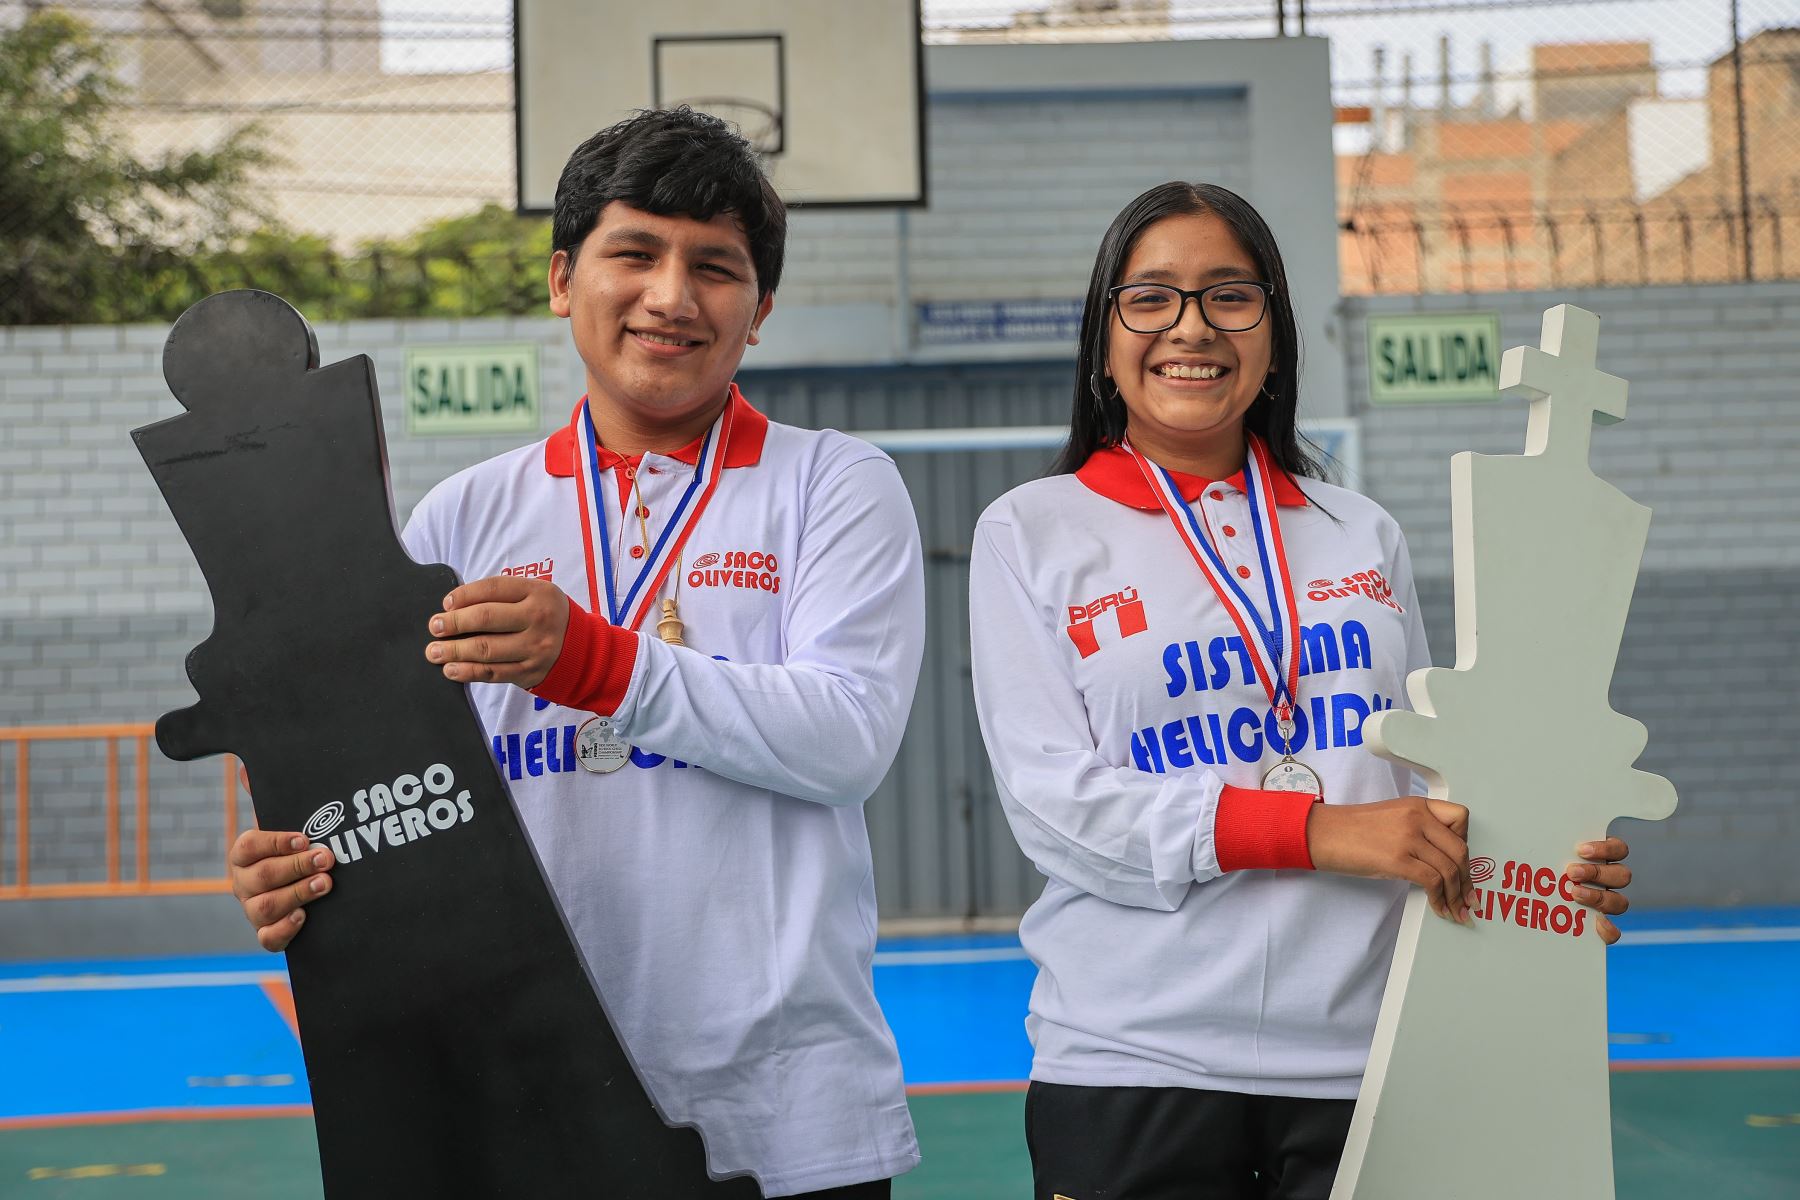 El equipo peruano se coronó campeón mundial escolar de ajedrez en Panamá, tras superar a cerca de 600 ajedrecistas de 36 países. Los mundialistas Henry Vasquéz y Azumi Bravo estudian en el colegio Saco Oliveros, ambos ajedrecistas obtuvieron el oro en sus respectivas categorías. 
Foto: ANDINA/Andrés Valle